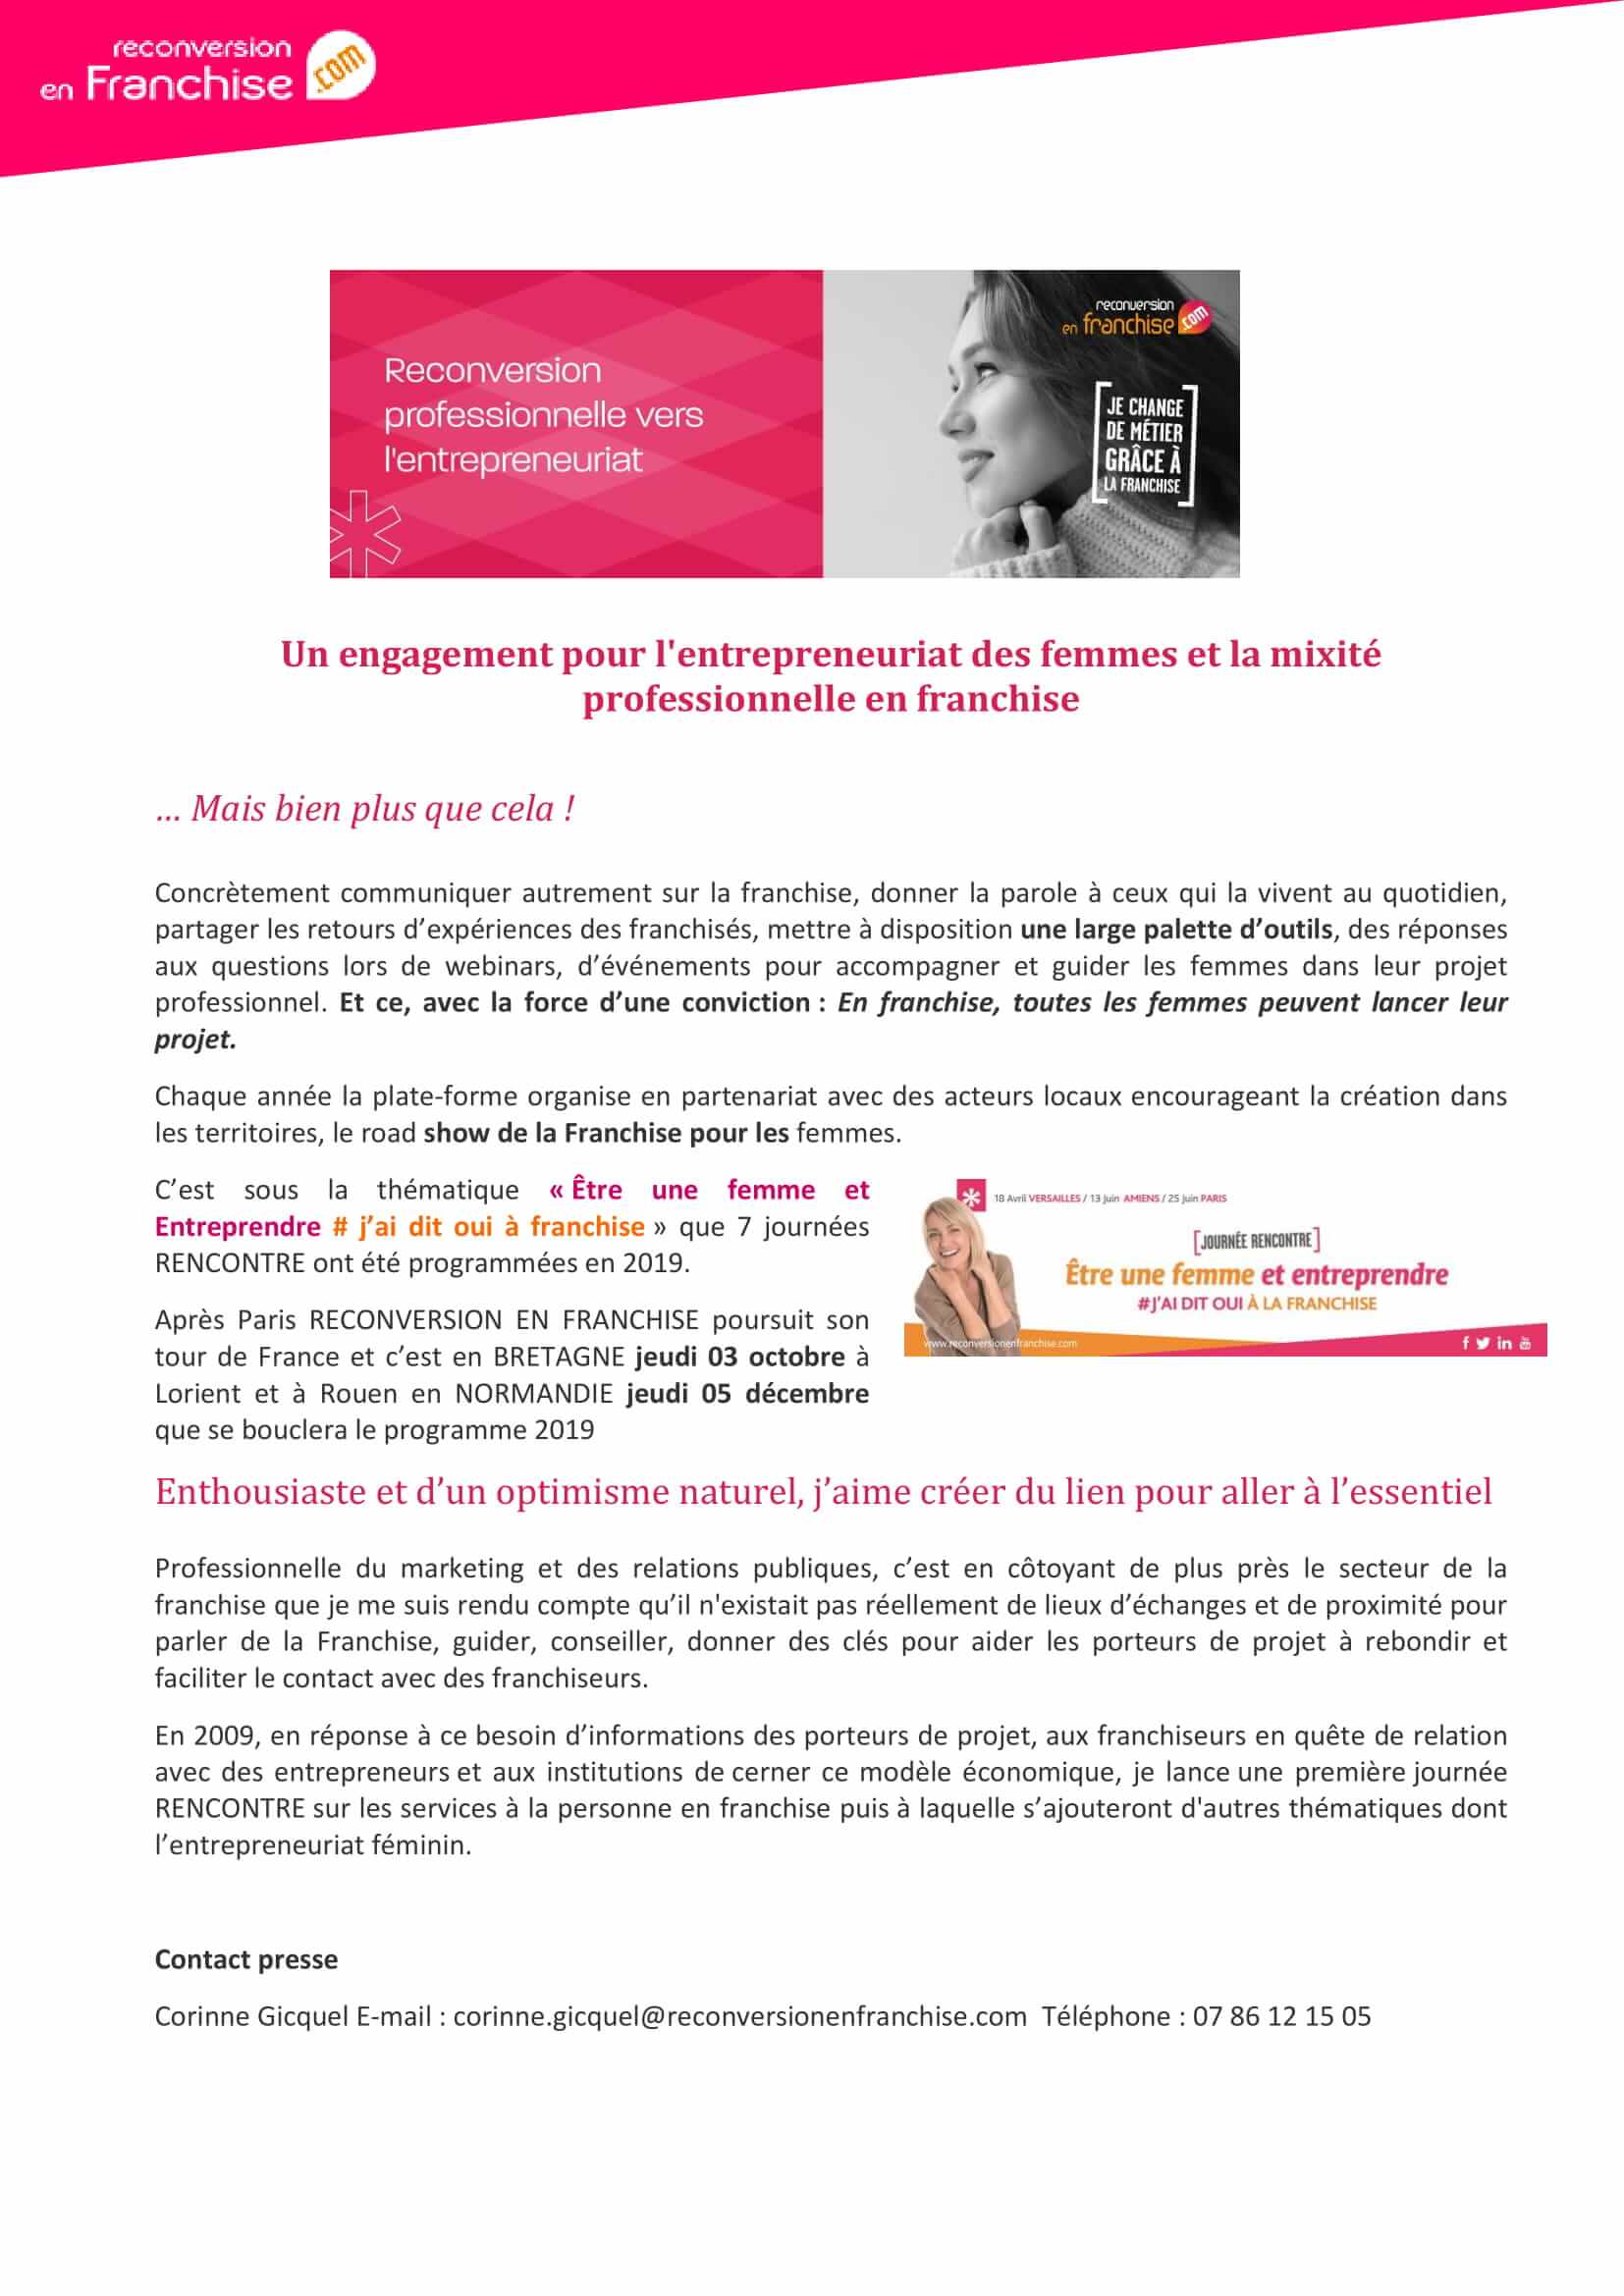 CQUE DE PRESSE _EntrepreneuriatFéminin , Nouvelles Opportunités , nouvelles vie. -2